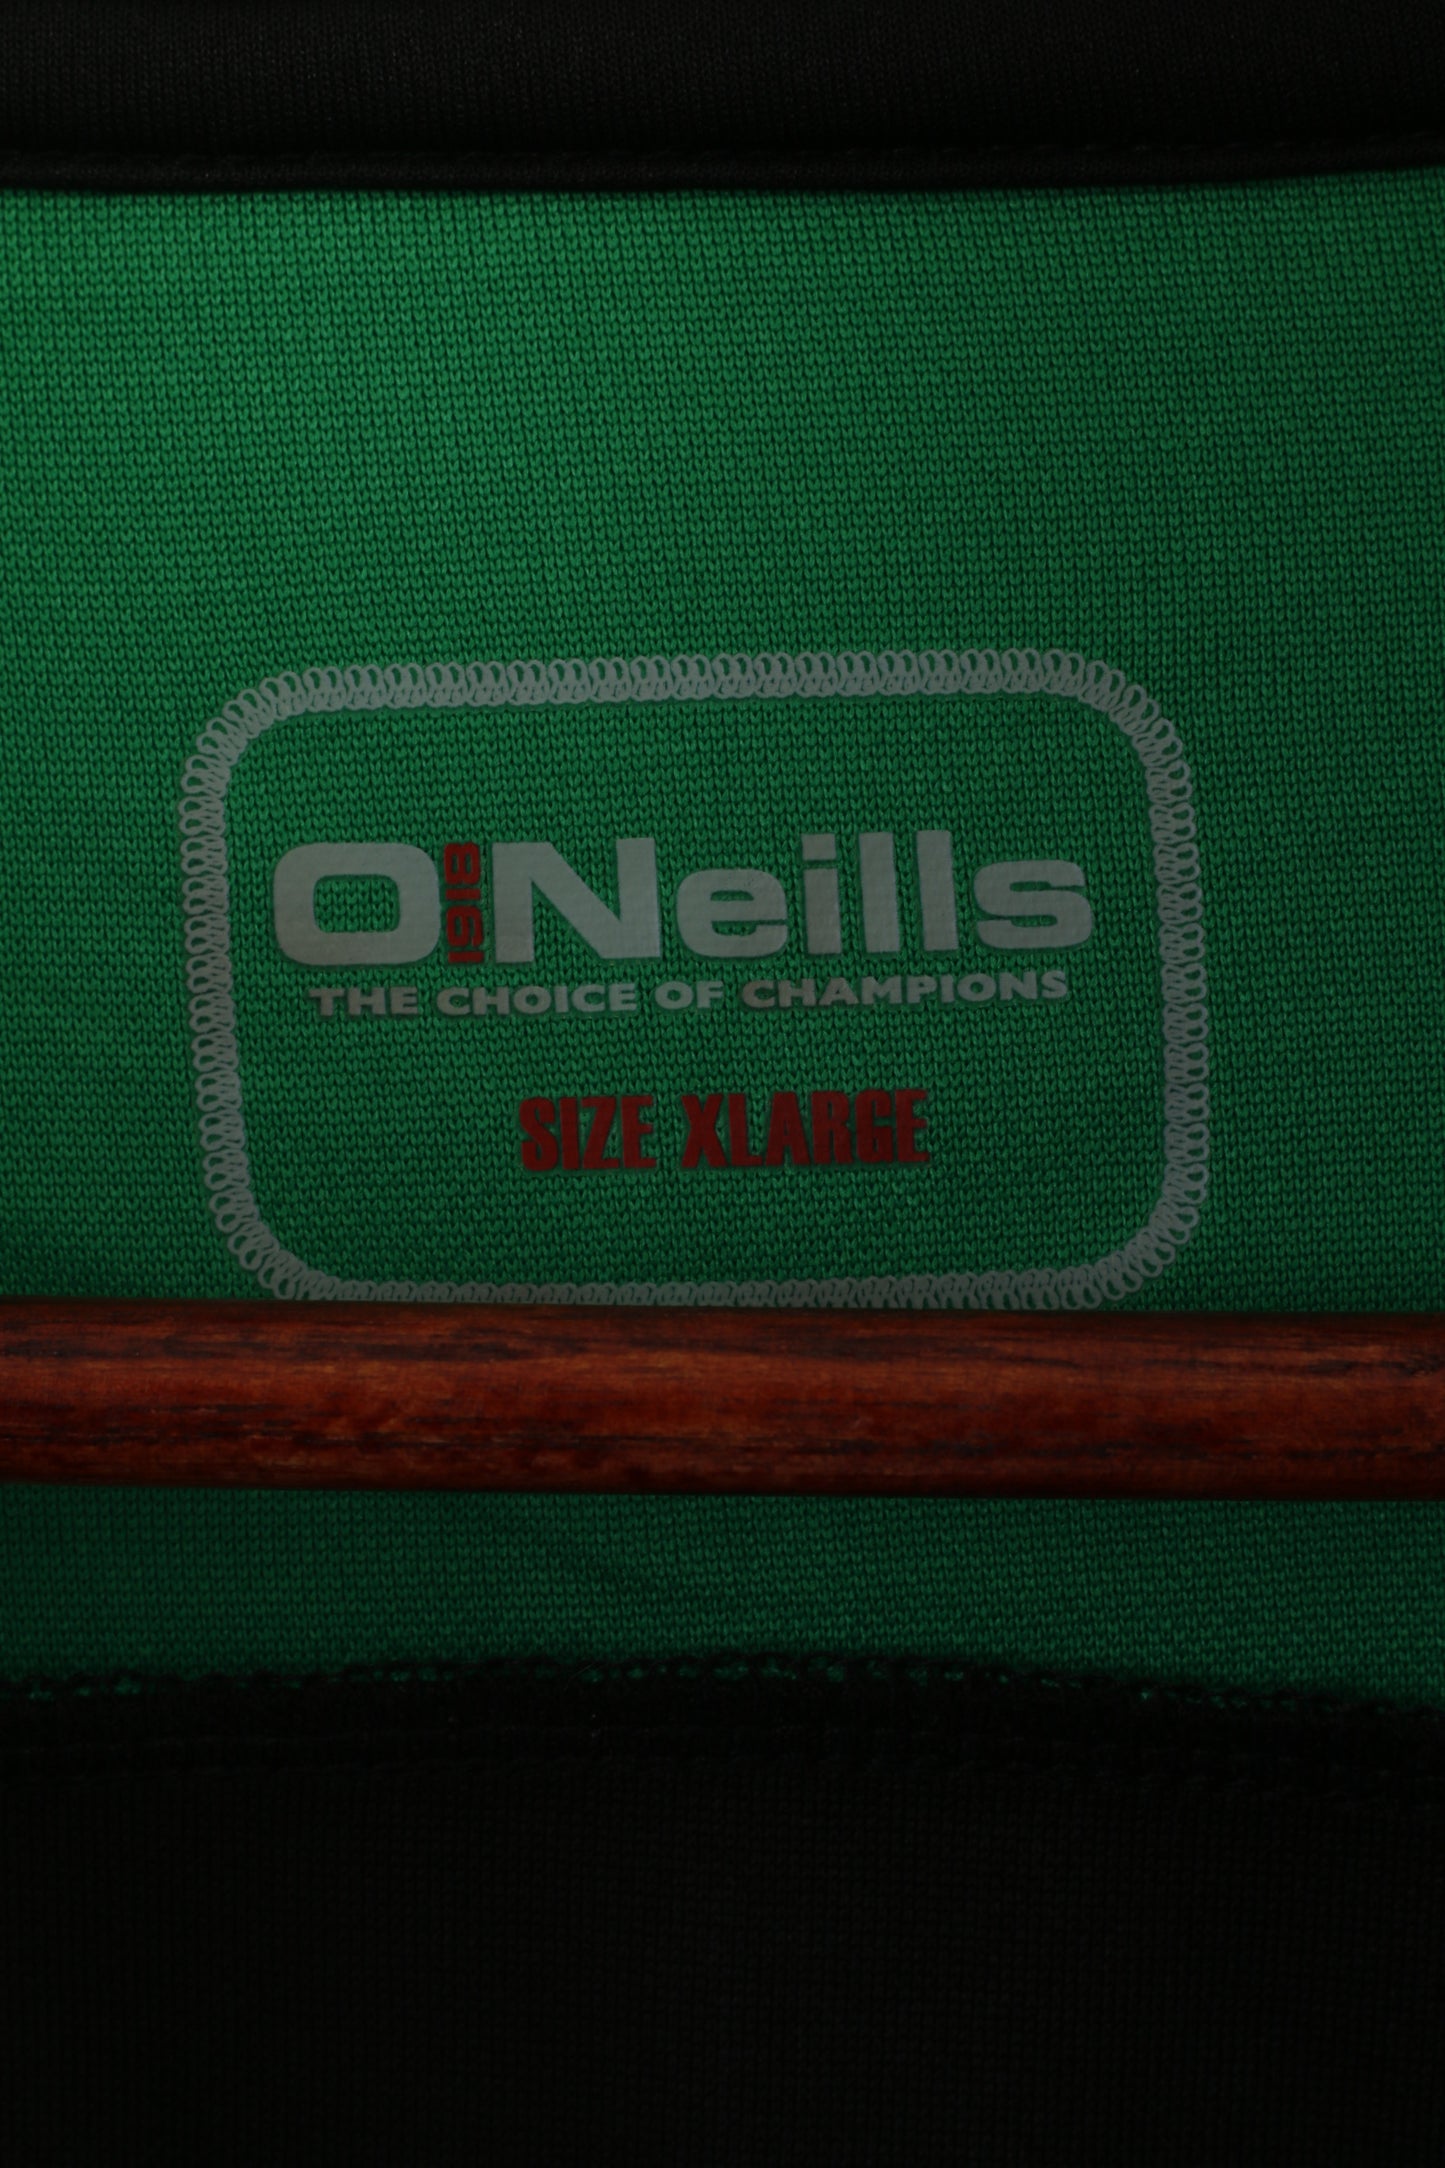 O' Neills Men XL Sweatshirt Green Lourdes Celtic Football Club Zip Neck Sport Top